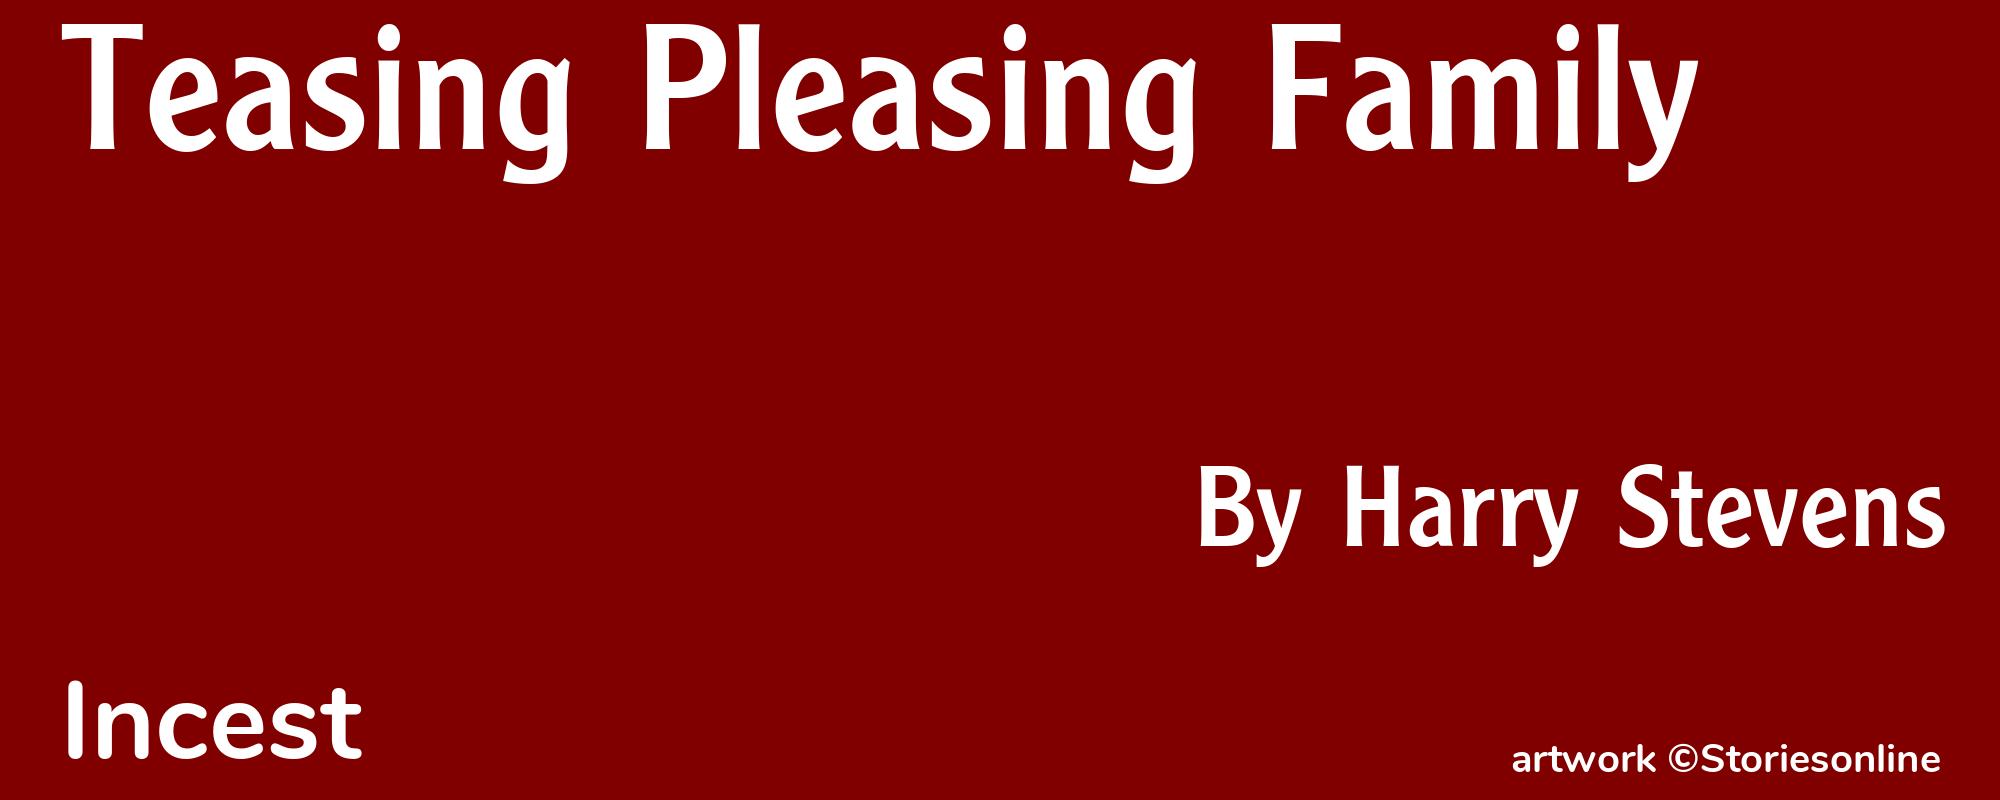 Teasing Pleasing Family - Cover